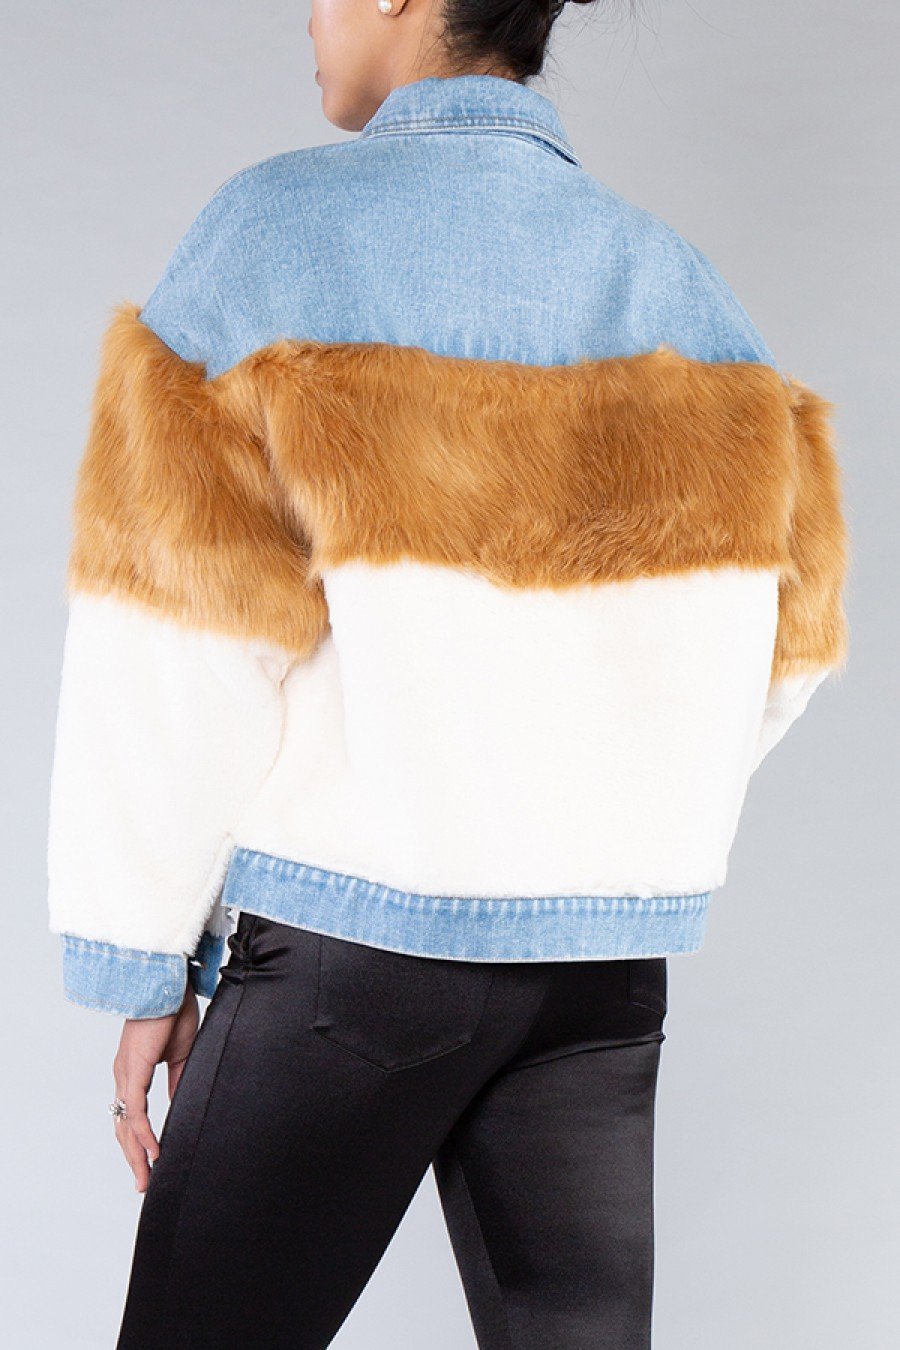 Level Up Denim Fur Jacket - SurgeStyle Boutique